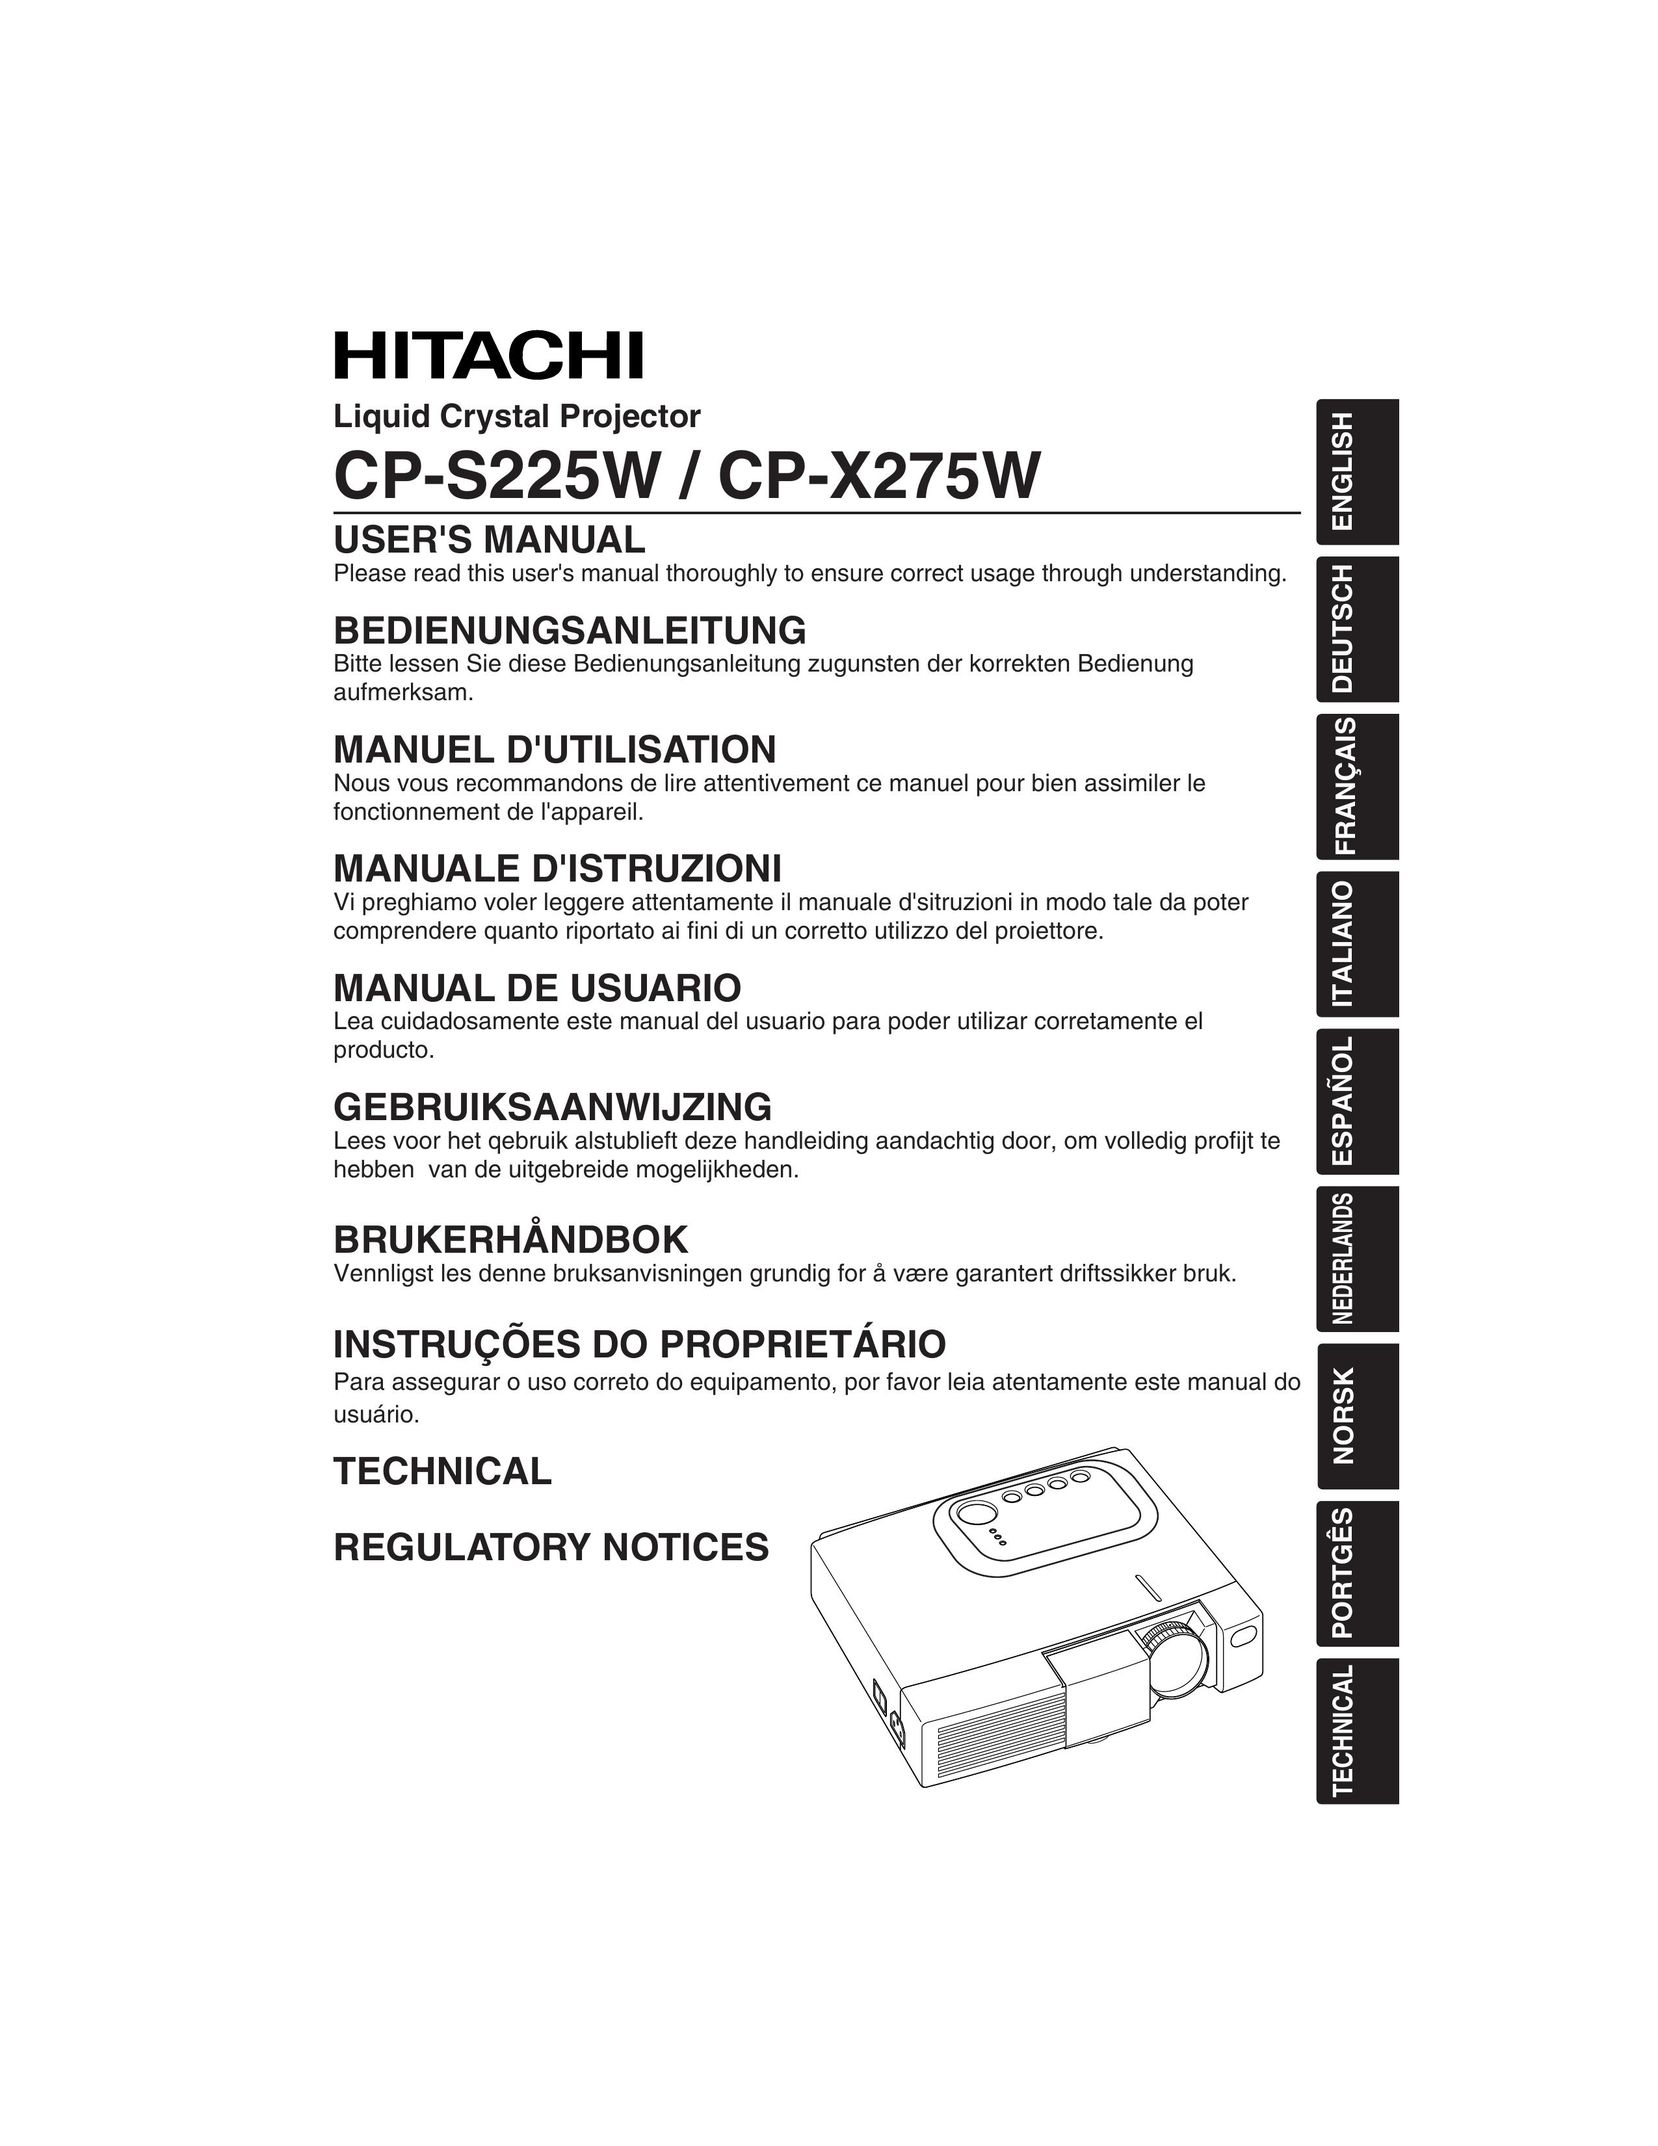 Hitachi CP-S225W Projector User Manual